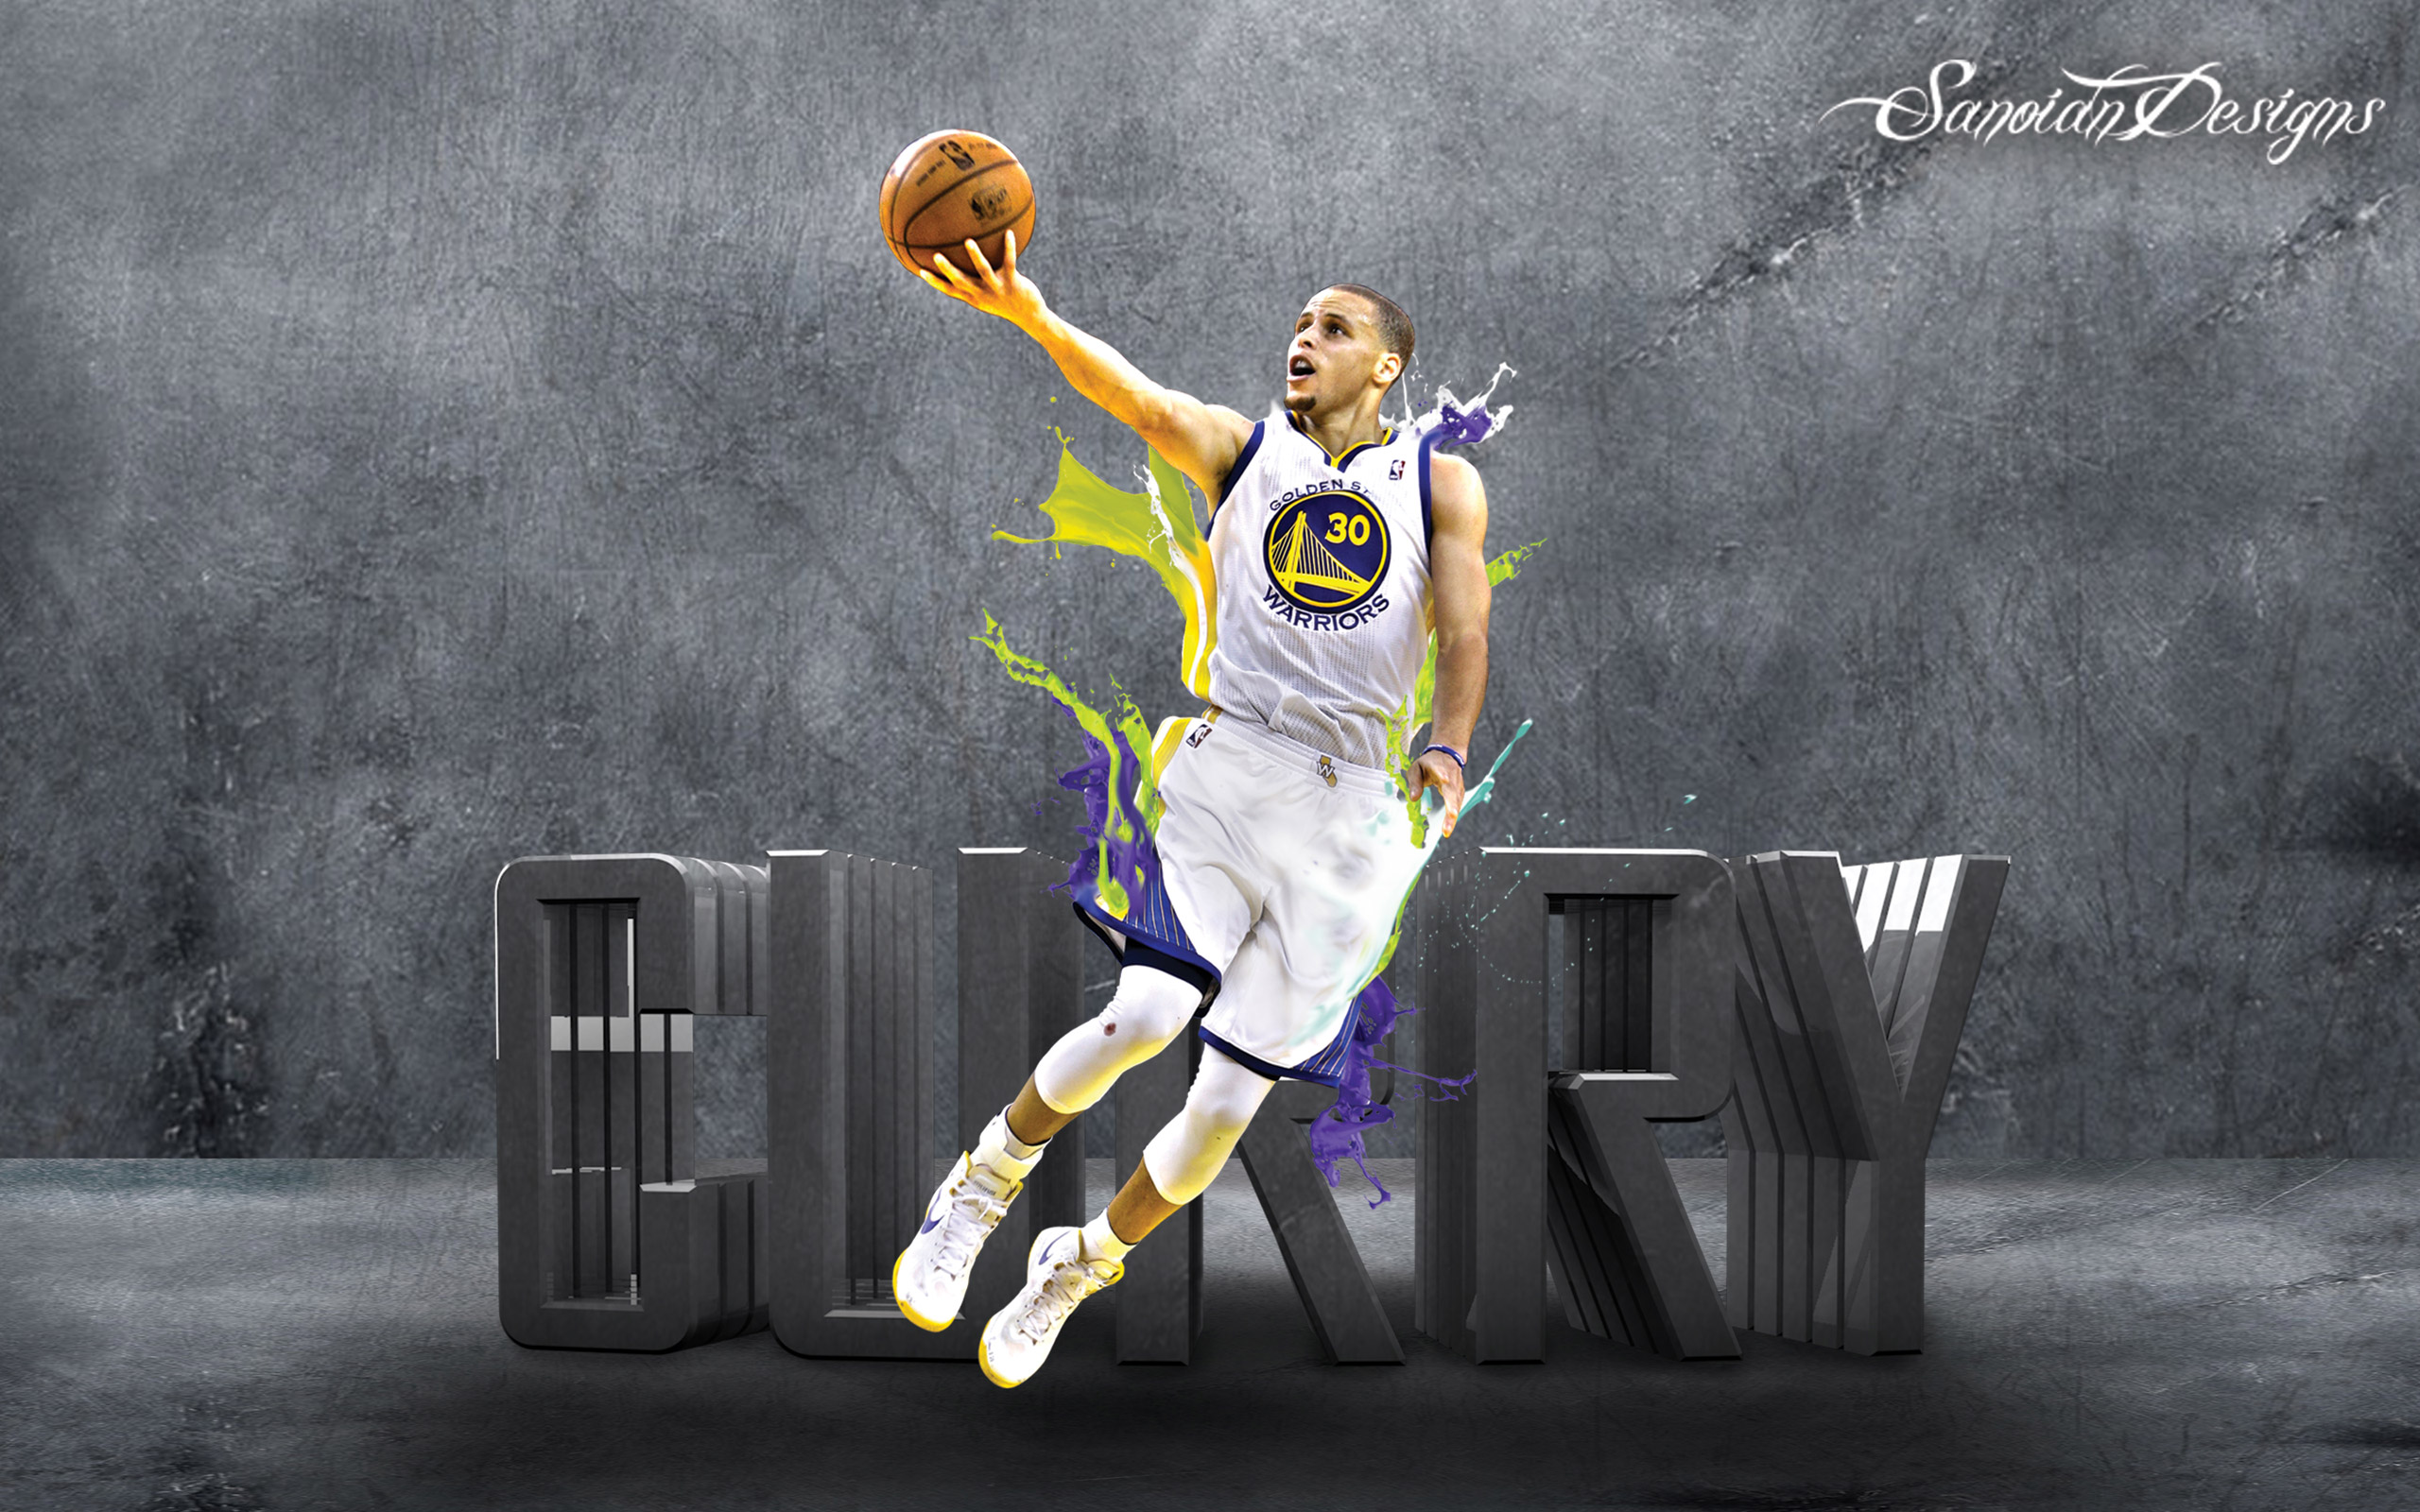 HD wallpaper: Basketball, Stephen Curry, Golden State Warriors